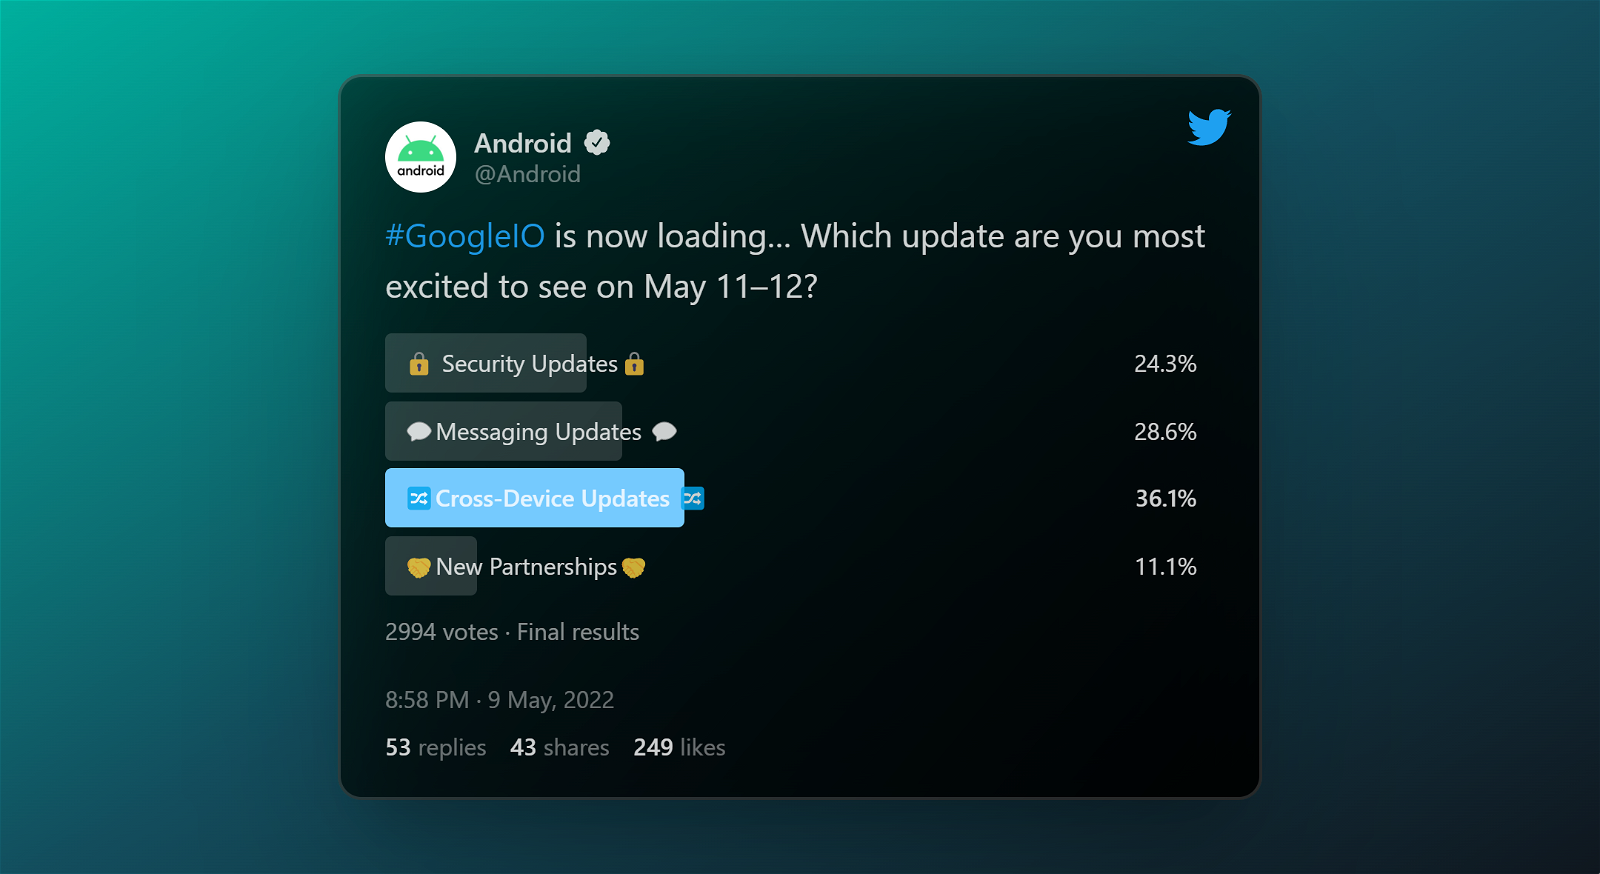 Tuit de Android en el que se muestran las novedades que se anunciarán en el Google I/O 2022